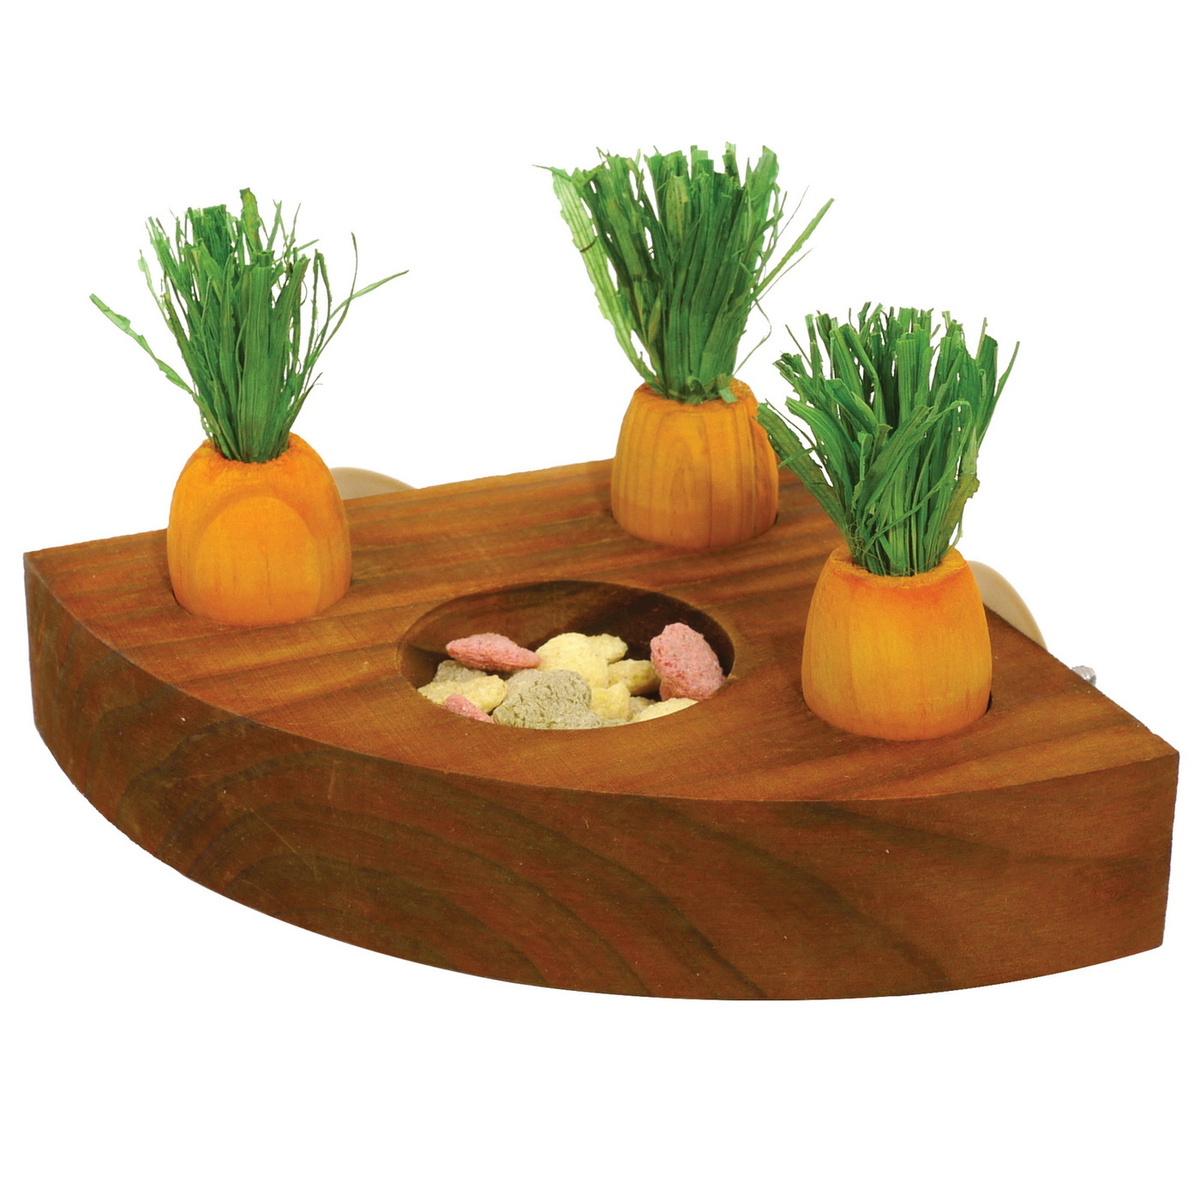 Игрушка для грызунов деревянная ROSEWOOD "Кормушка с морковками", коричневая, 12х12см  #1